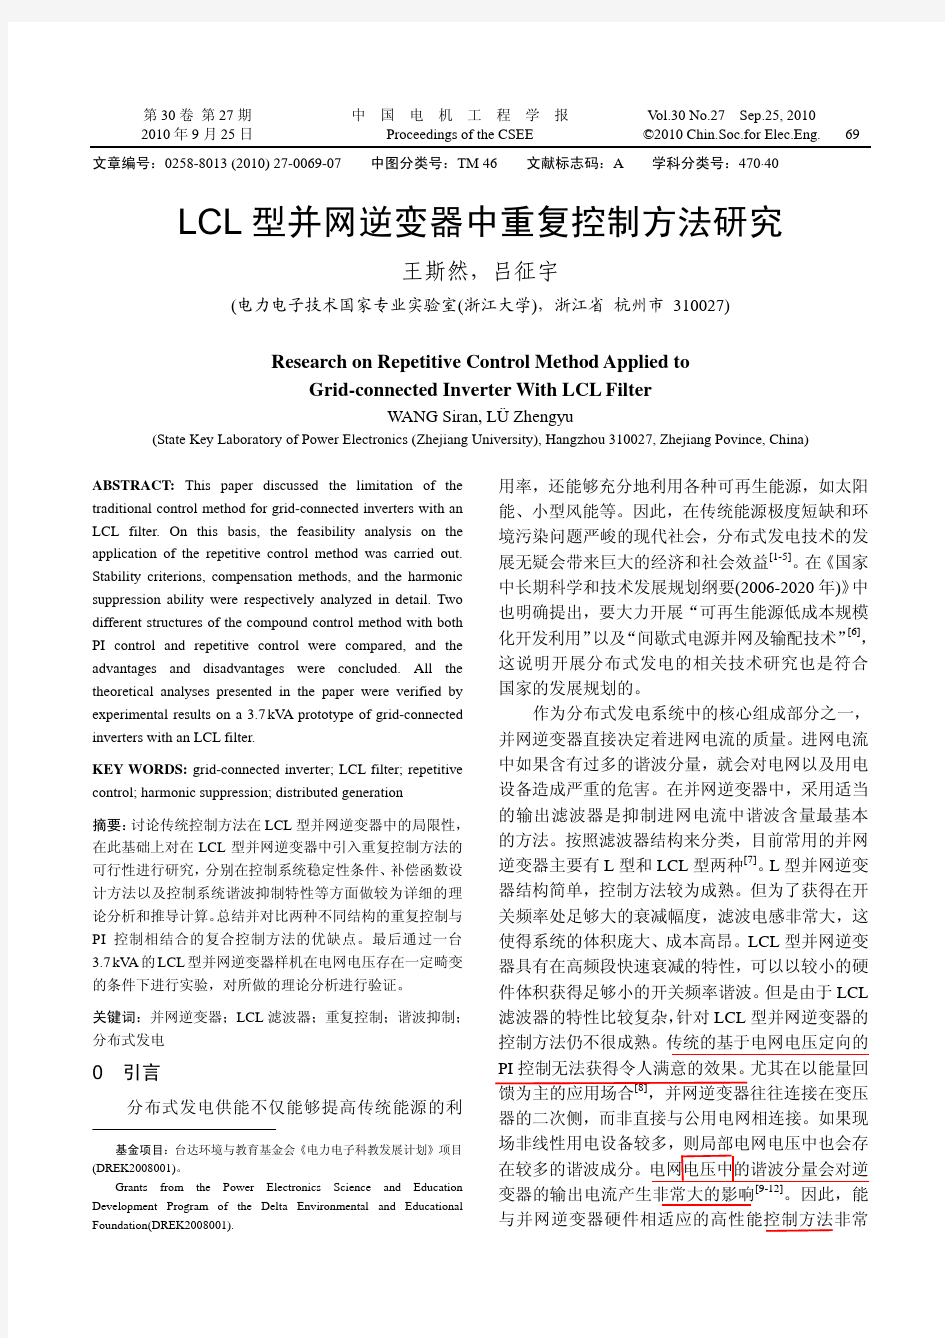 LCL型并网逆变器中重复控制方法研究